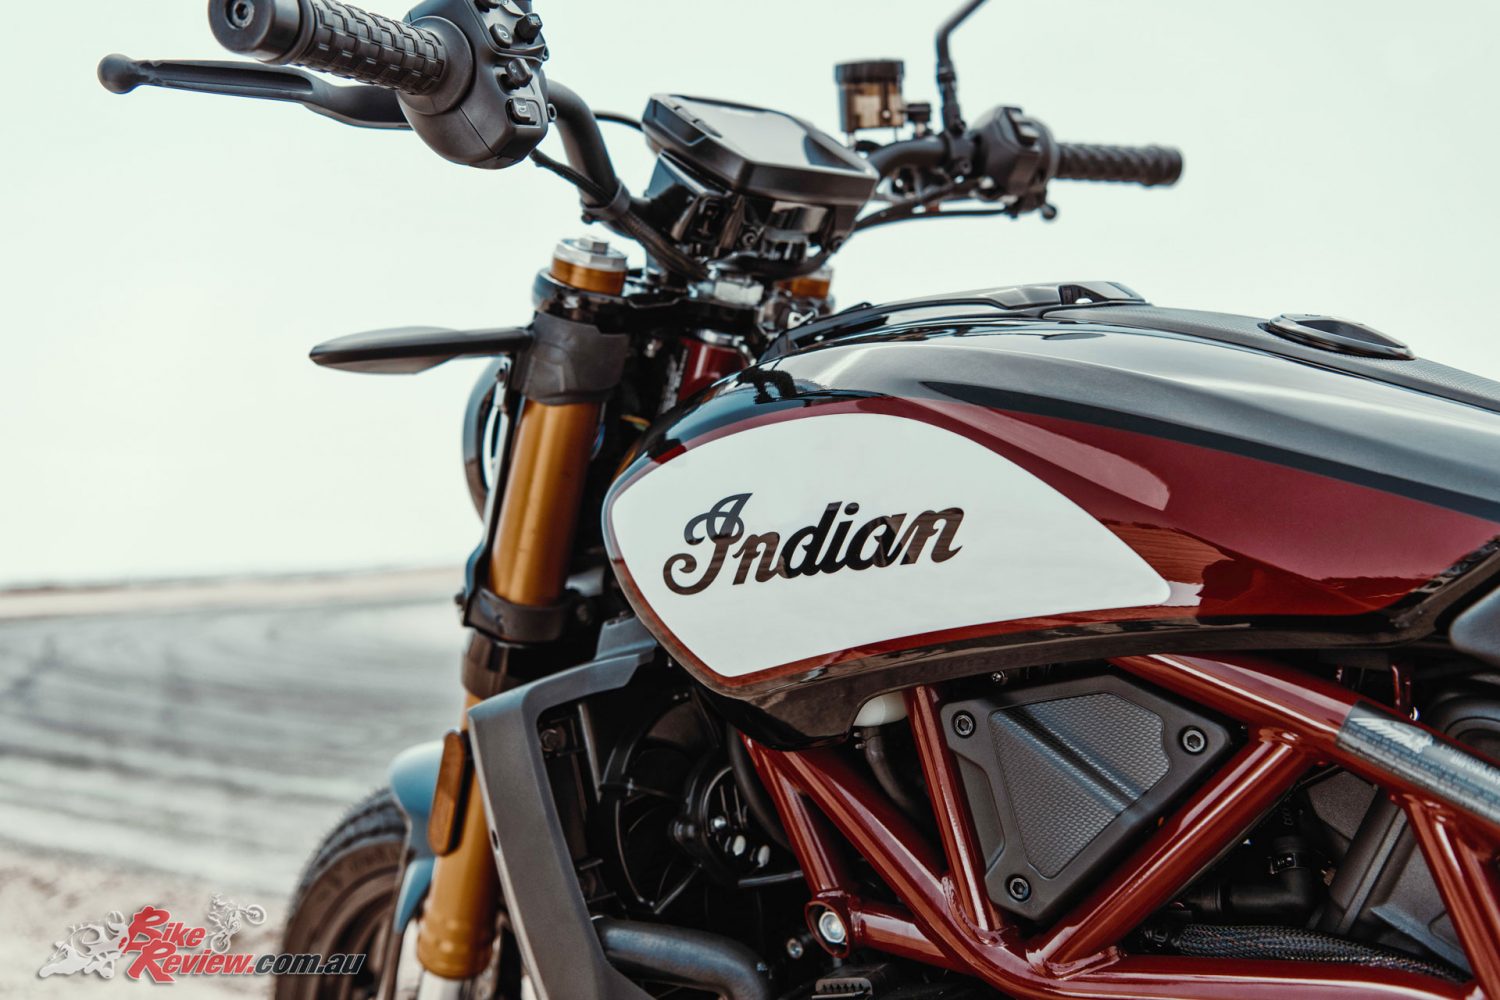 New Model 2019 Indian Ftr 1200 Ftr 1200 S Bike Review